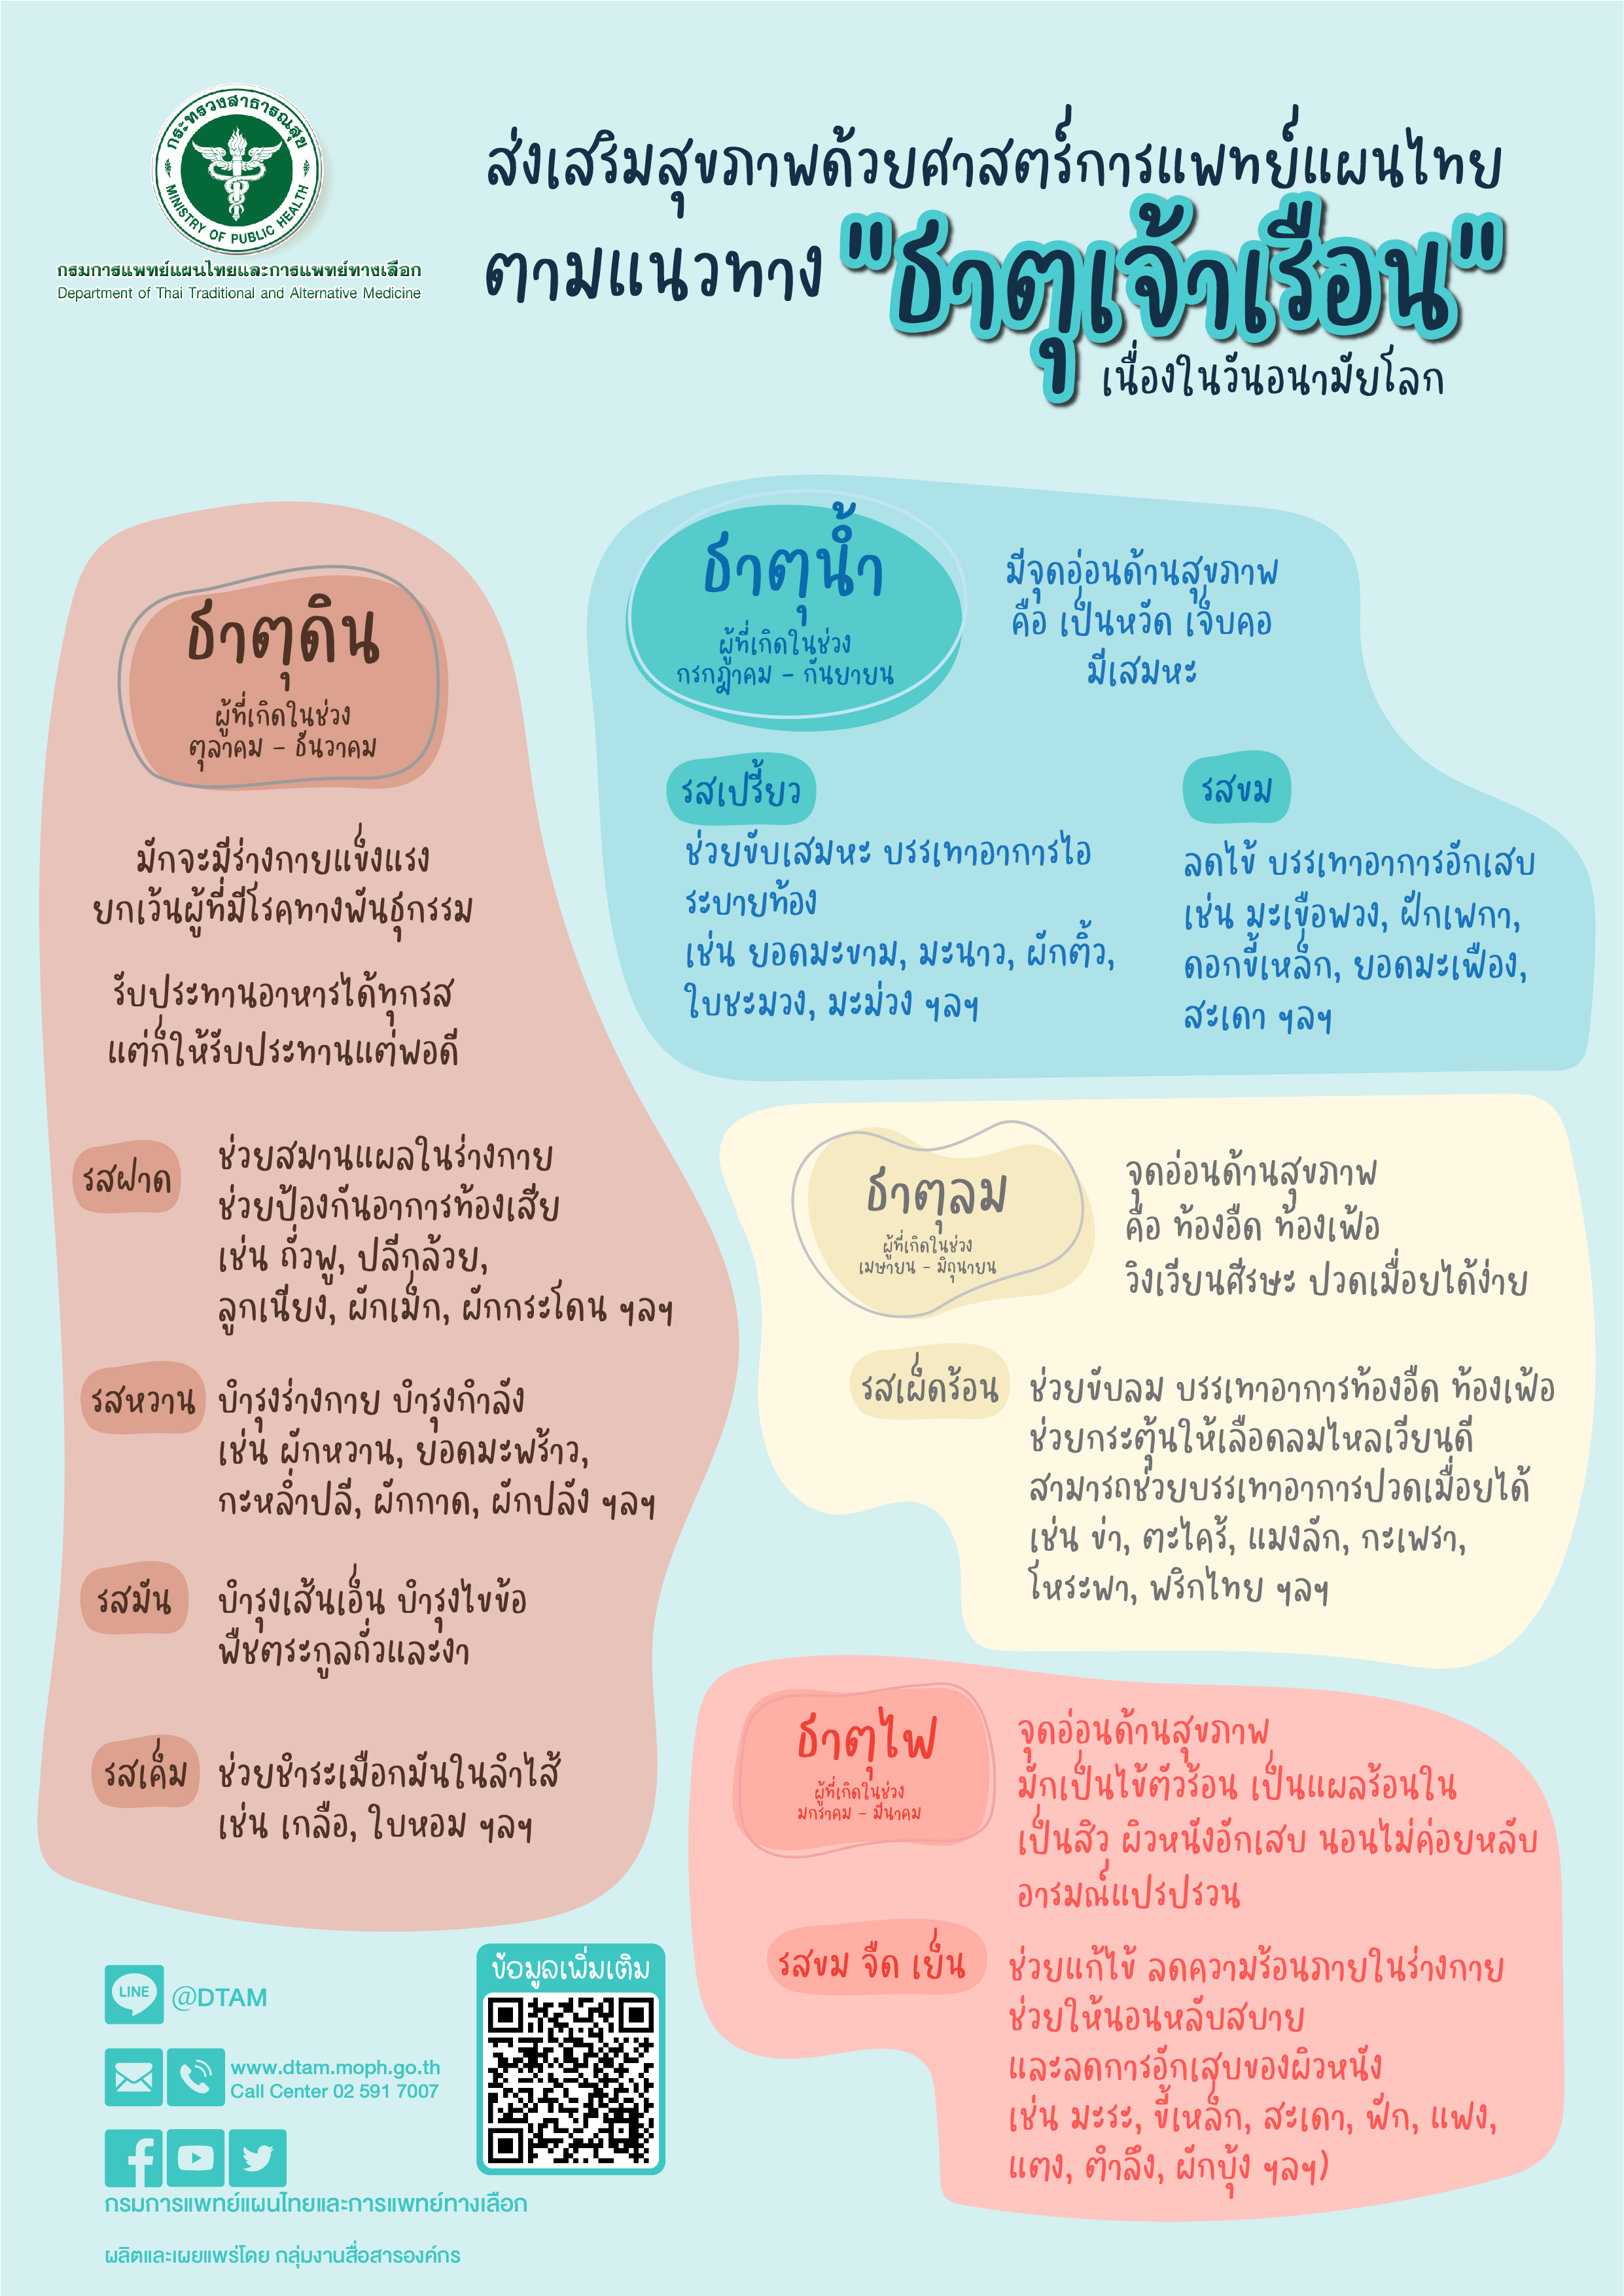 การส่งเสริมสุขภาพด้วยศาสตร์การแพทย์แผนไทยตามแนวทาง "ธาตุเจ้าเรือน"